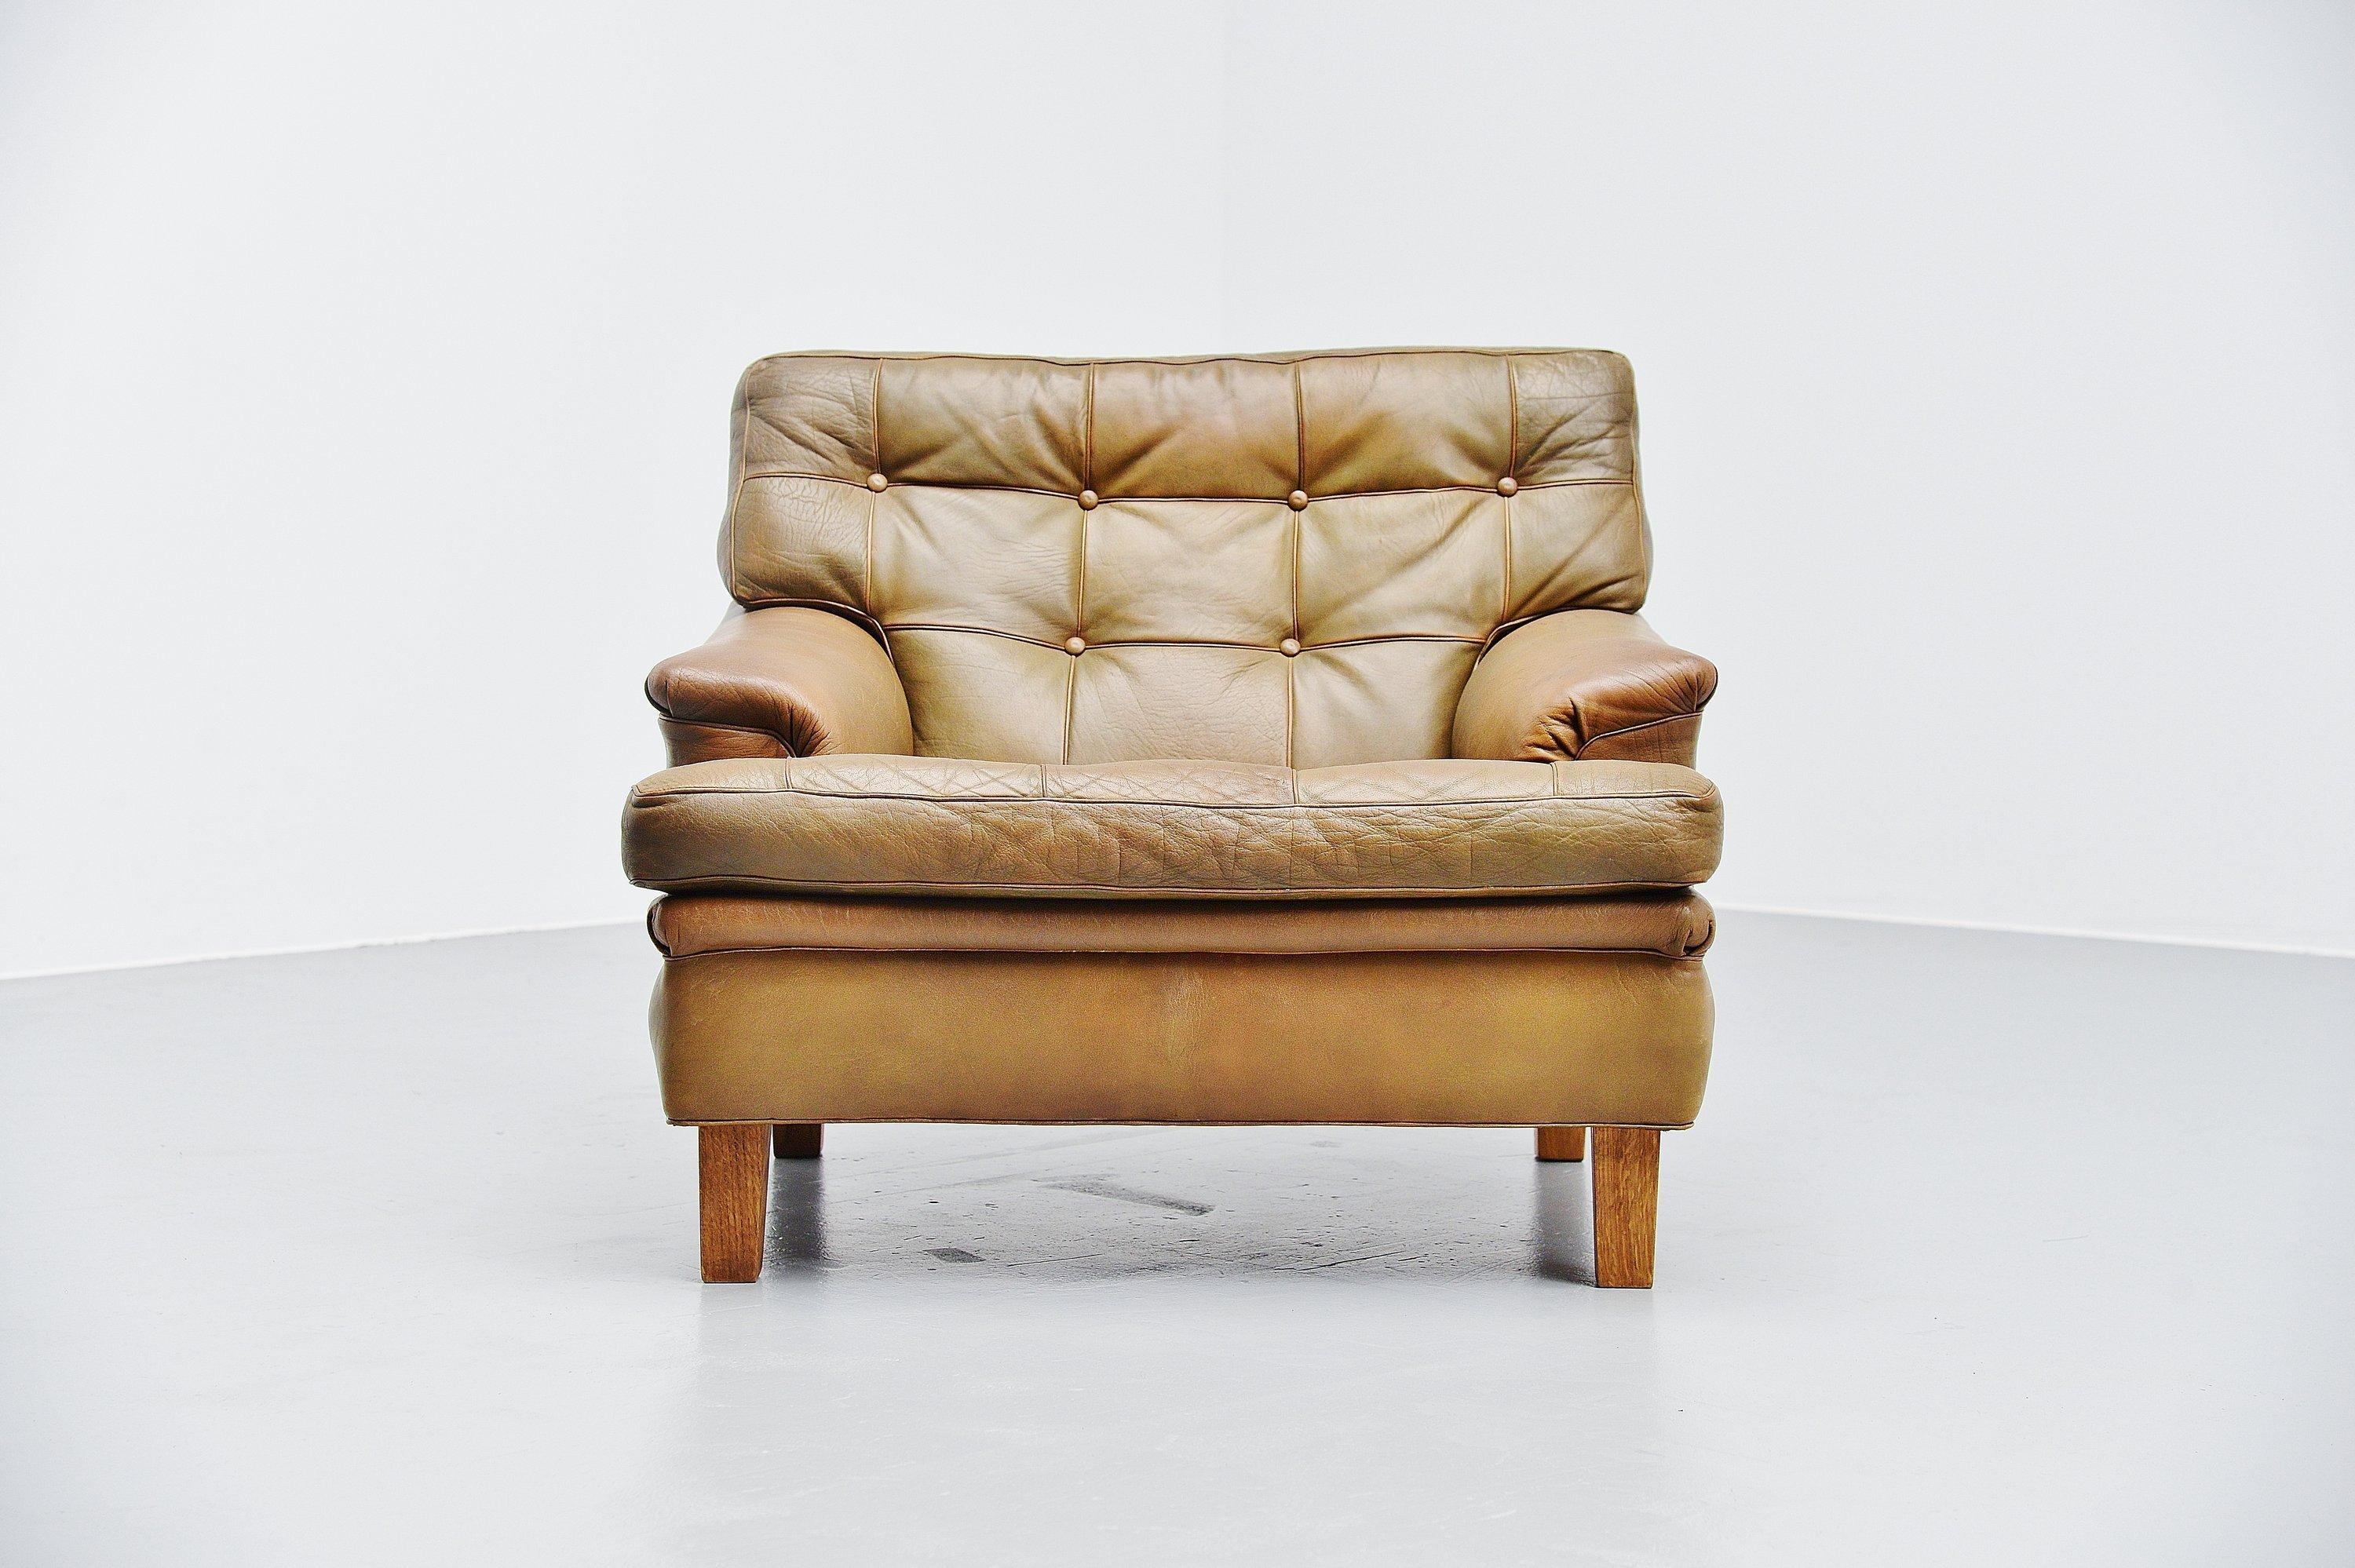 Très belle et confortable chaise longue Merkur conçue par Arne Norell et fabriquée par Arne Norell AB à Aneby, Suède, 1960. La chaise a de très beaux coussins en cuir touffeté vert olive avec des pieds en chêne massif. Le fauteuil est très